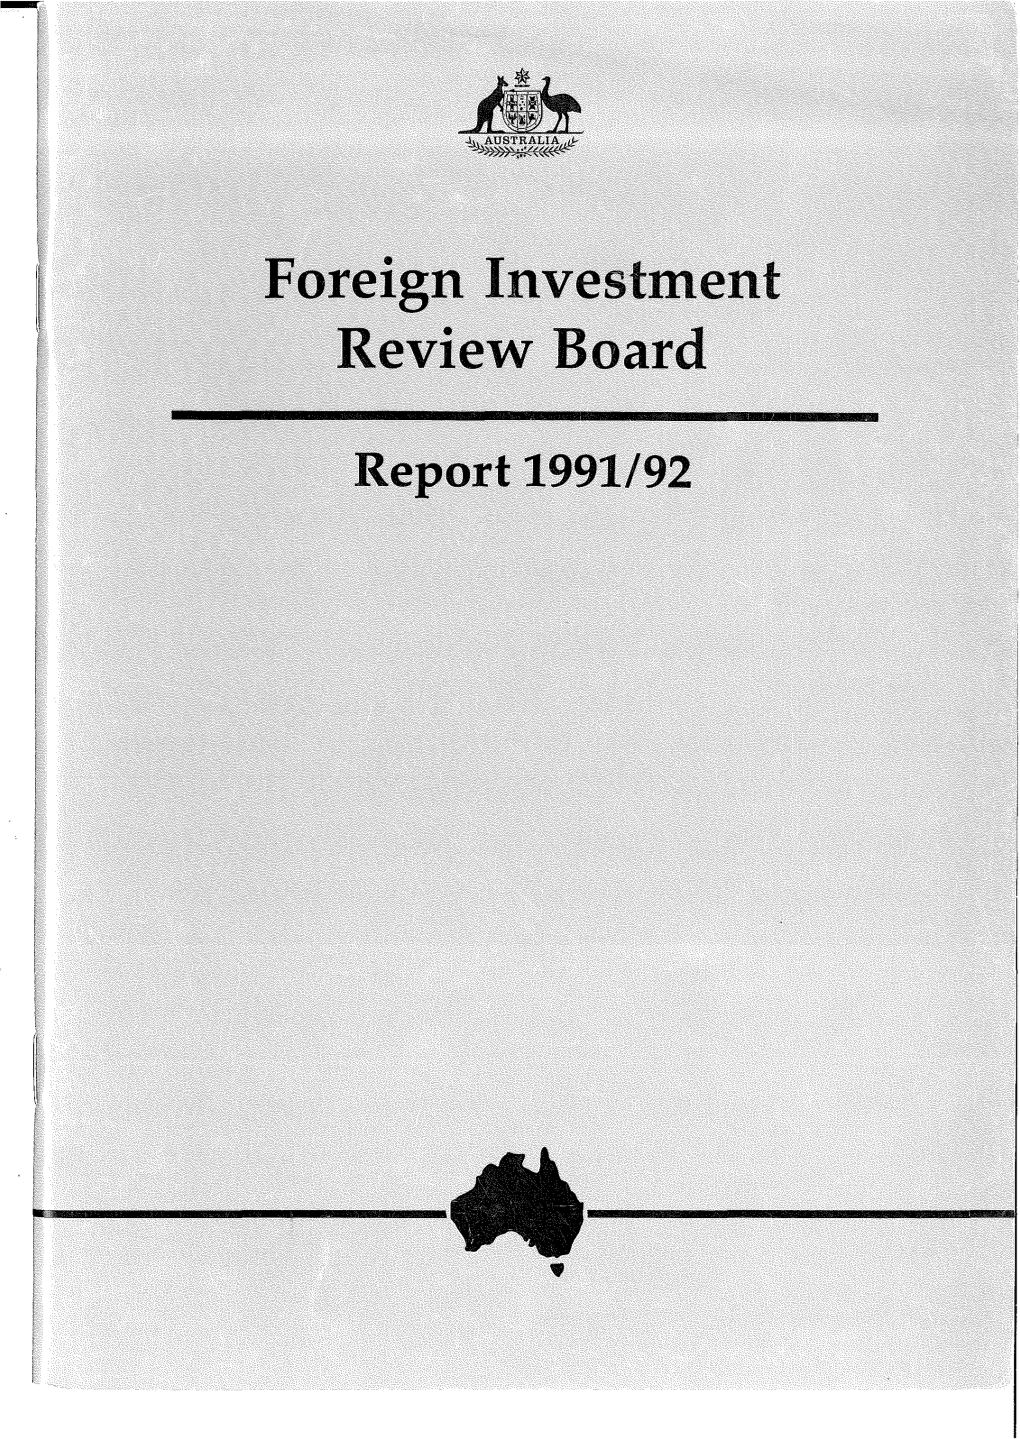 1991-92 FIRB Annual Report